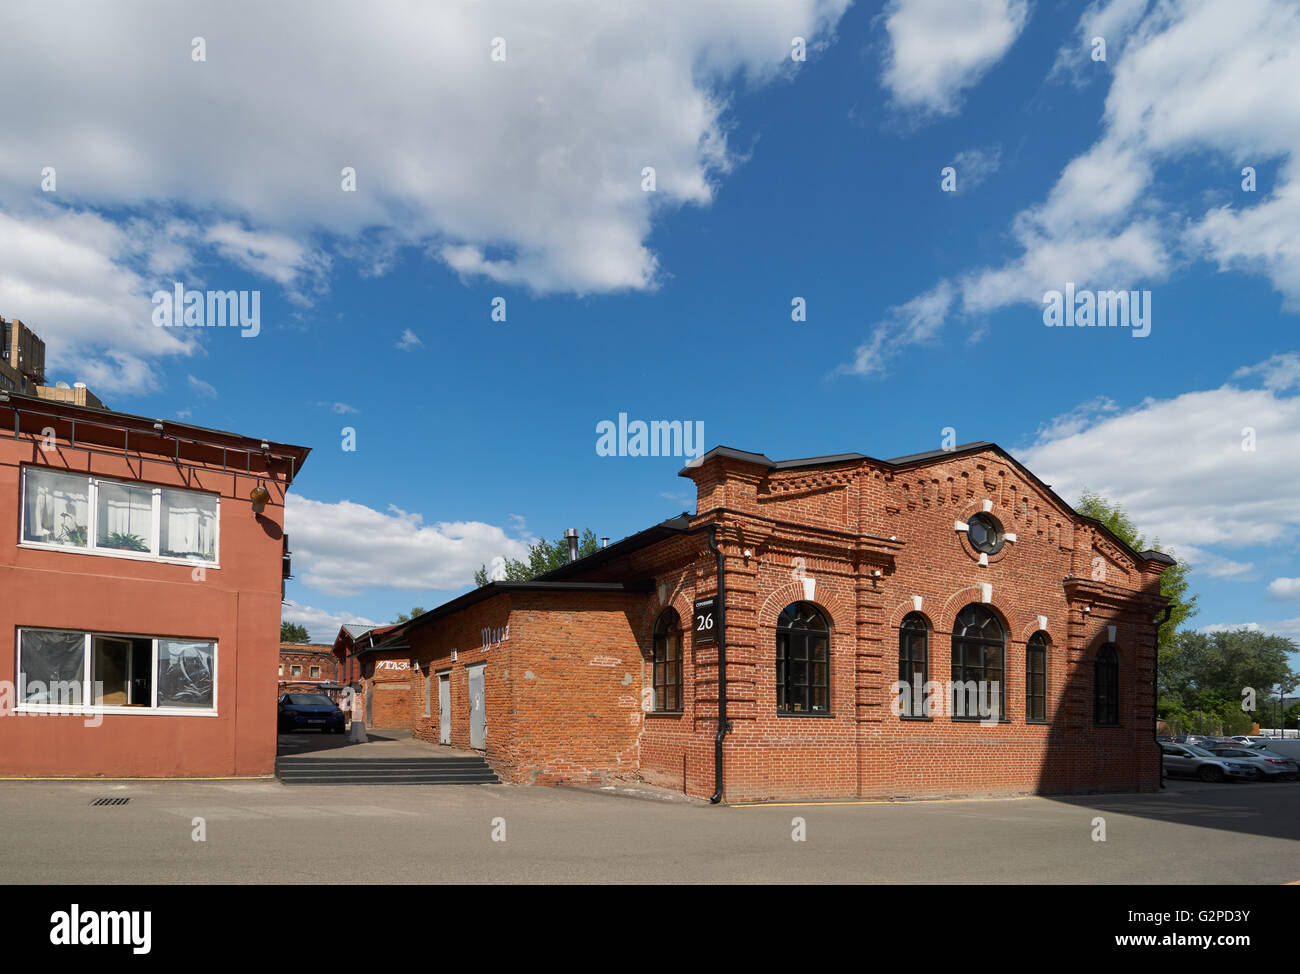 Moskau, Russland - 1. Juni 2016: Alte Backsteingebäude auf dem Territorium des ehemaligen Arma-Fabrik. Nizhniy Susalniy Pereulok (Bahn) in Stockfoto